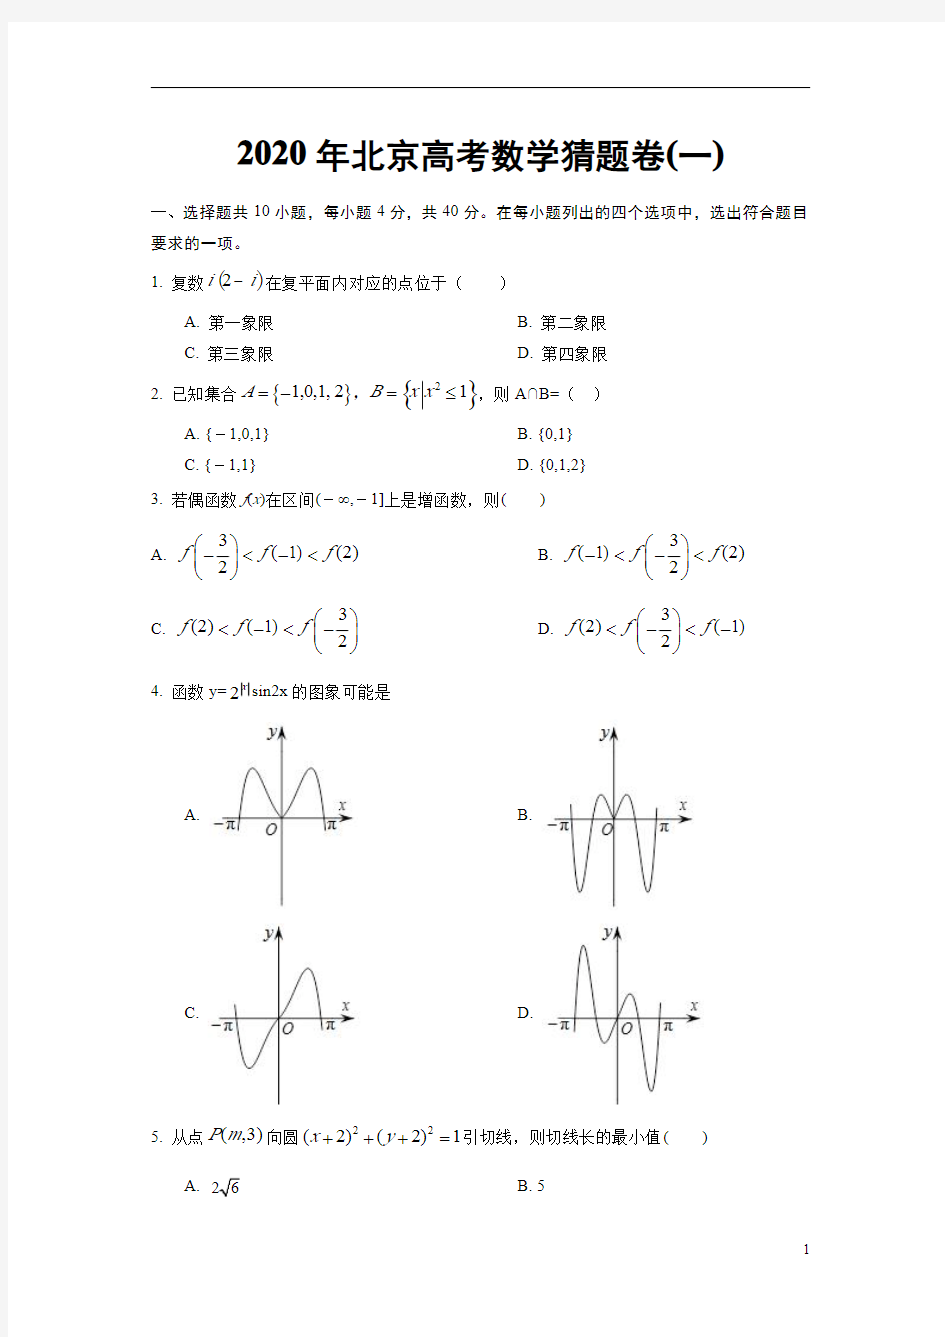 2020年北京高考数学猜题卷(一)(原卷版)